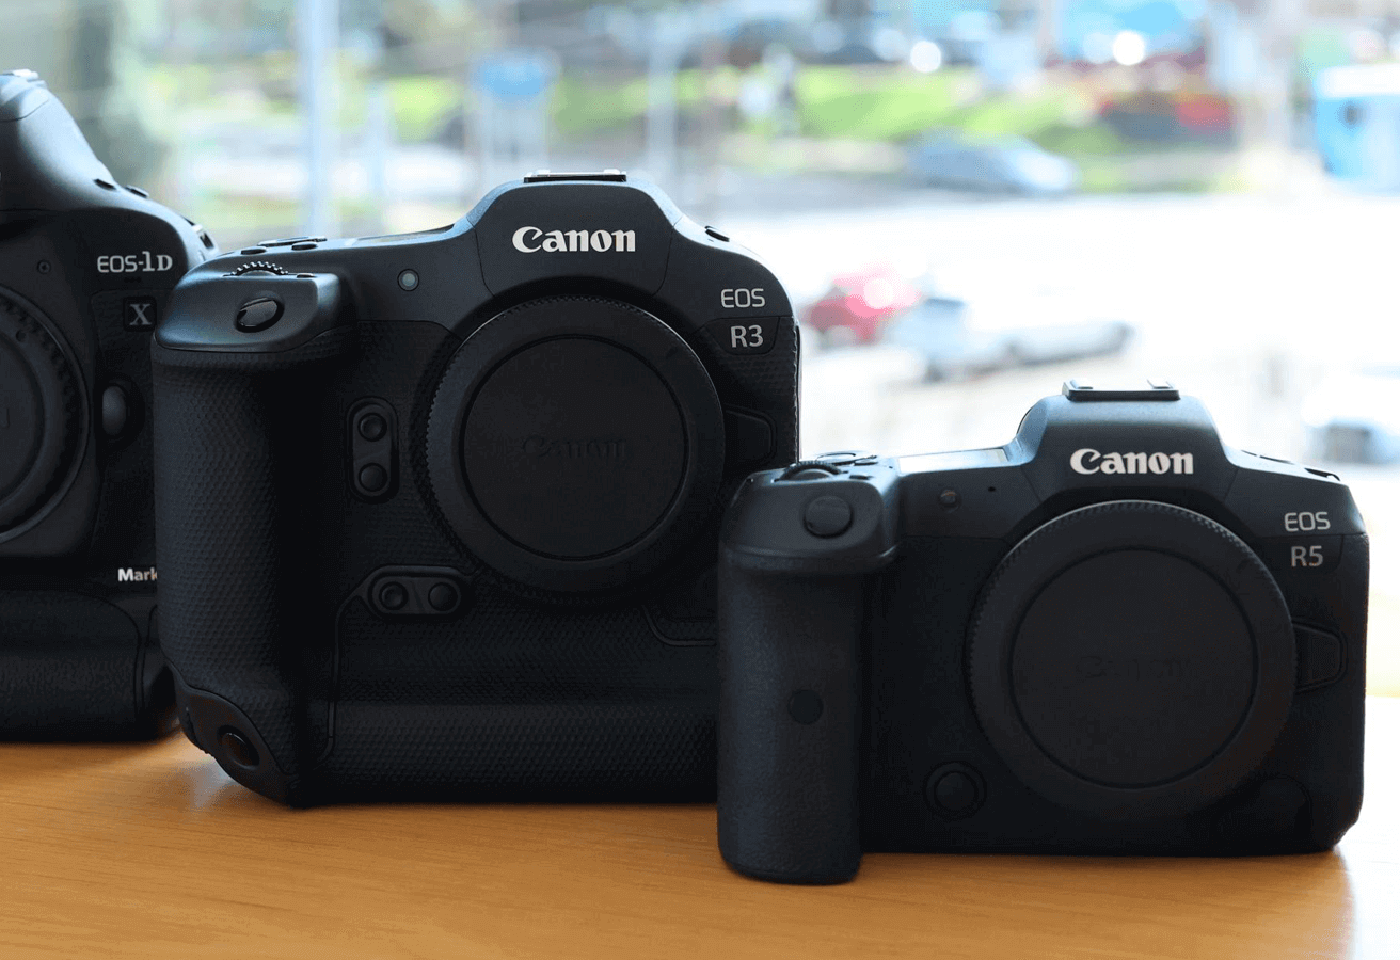 EOS R3 vs EOS-1D X Mark III vs EOS R5 cameras